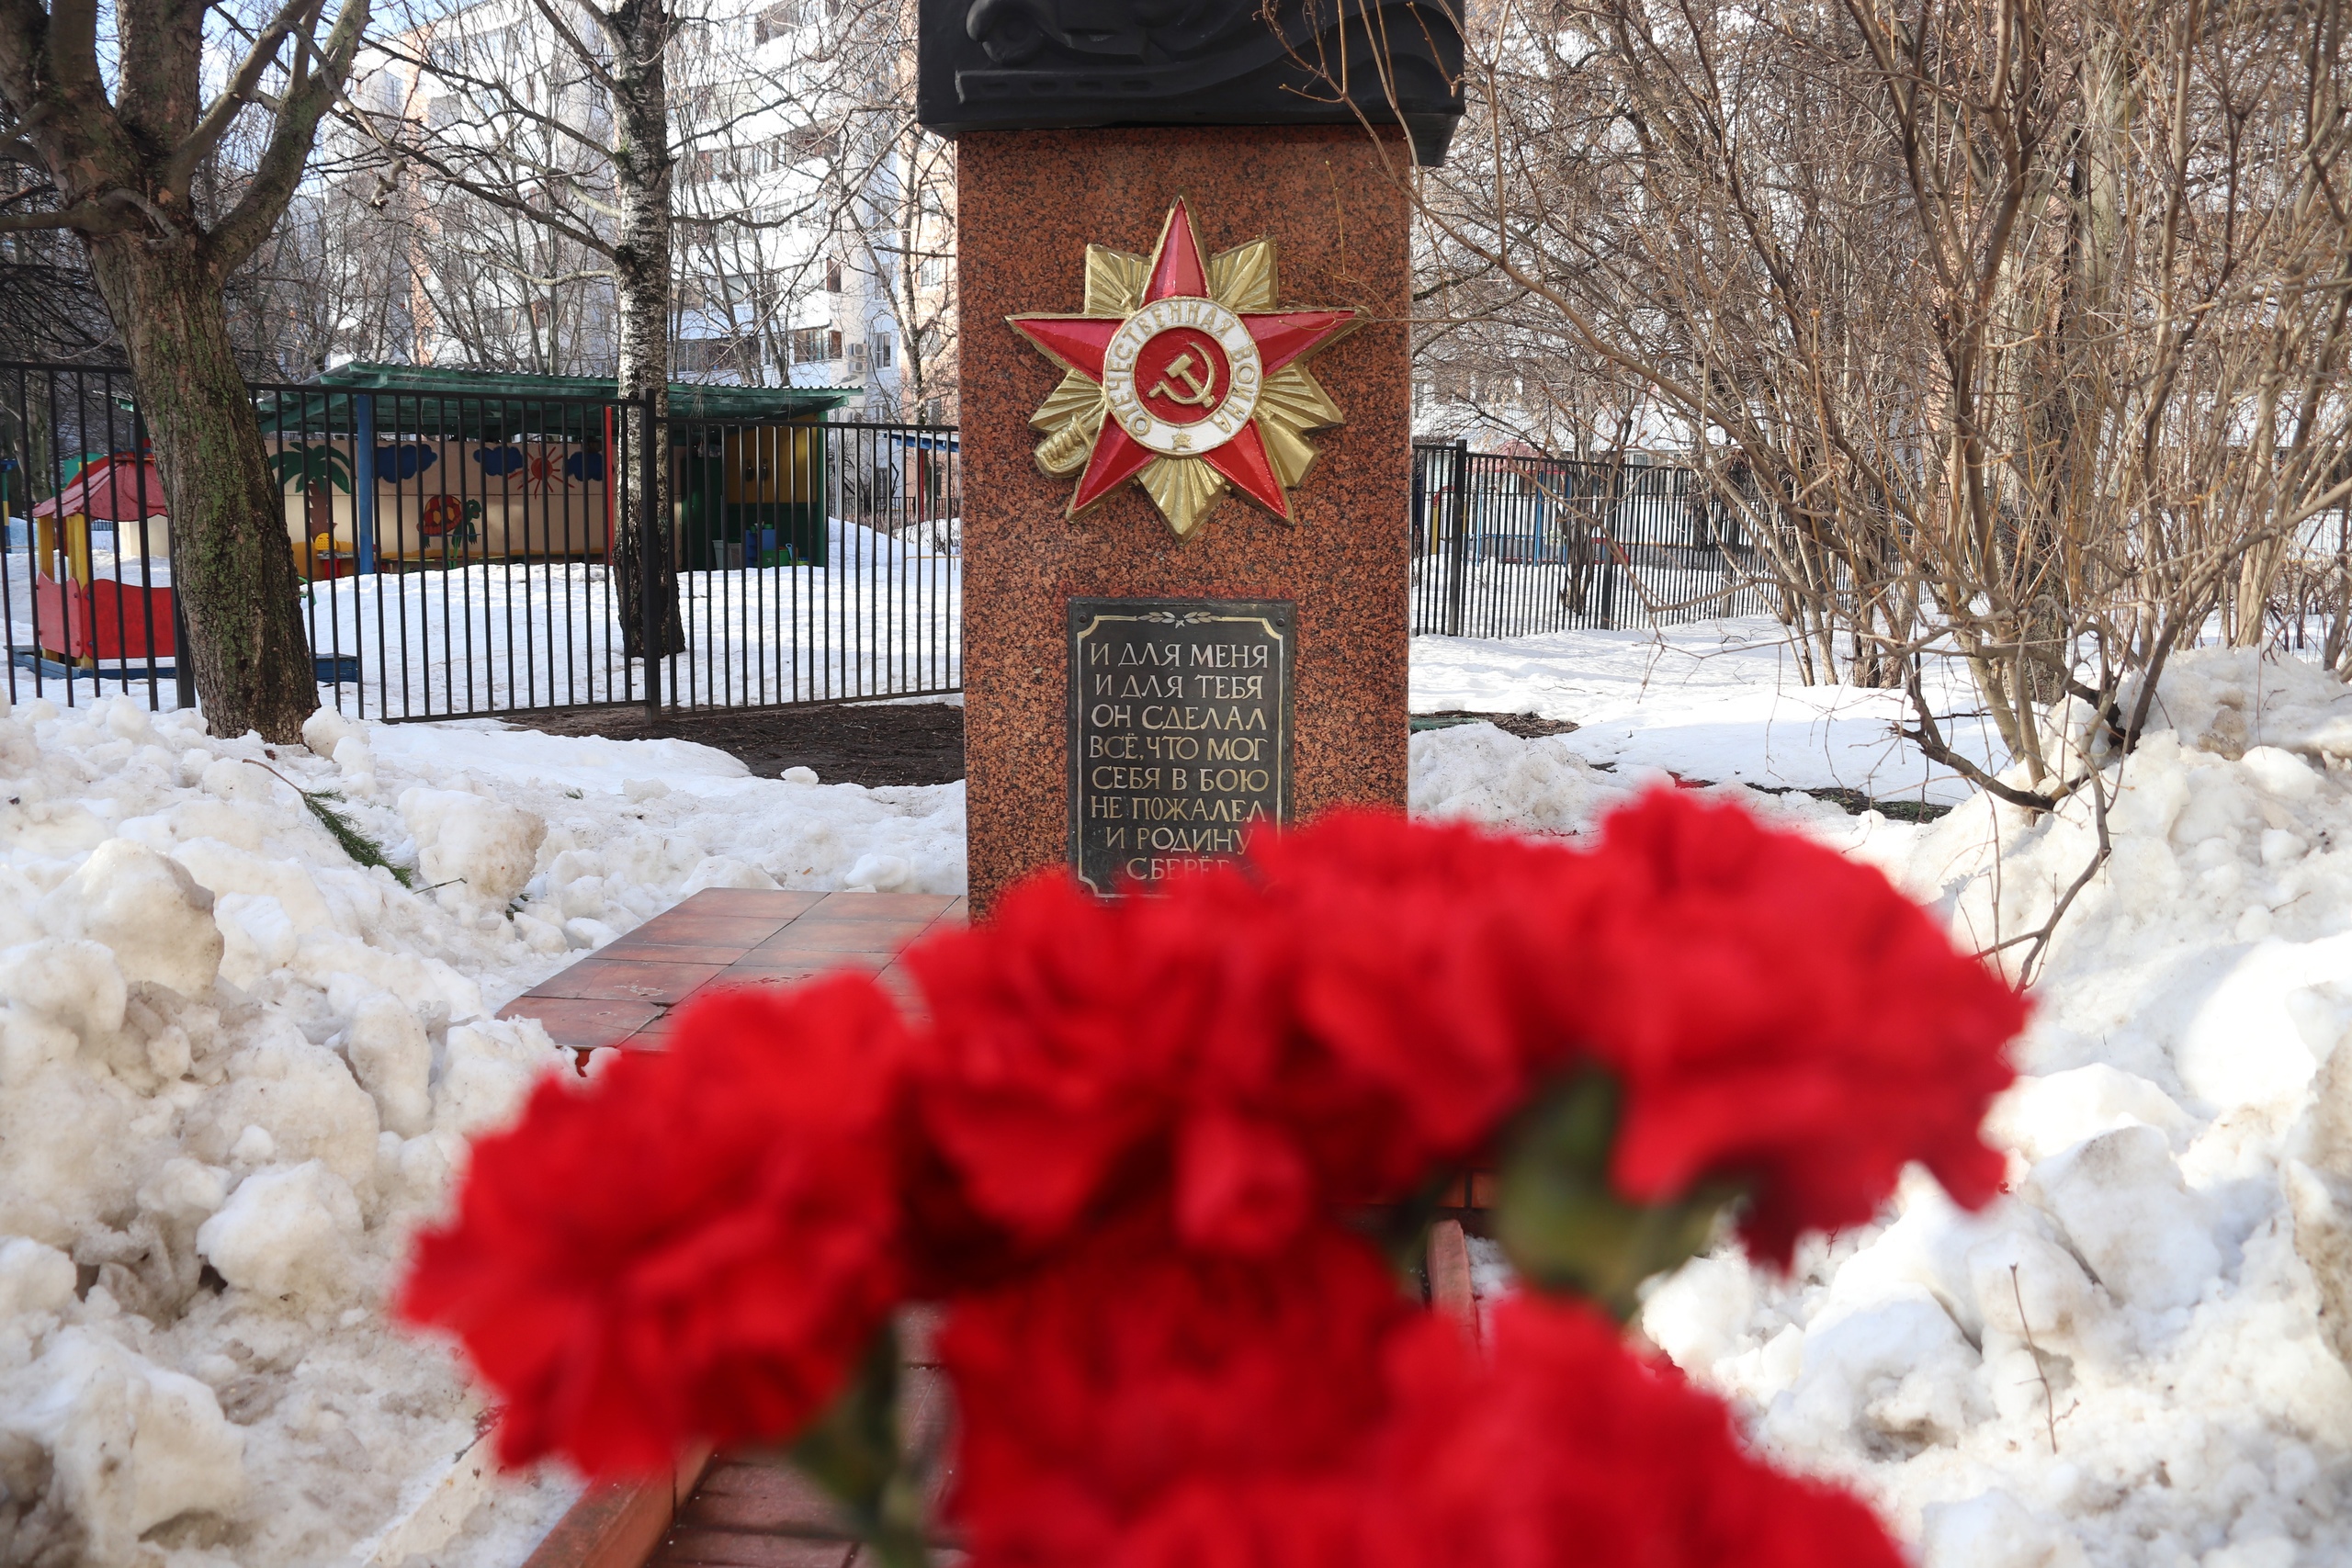 Мемориальный митинг у памятника Солдату организовали в Орехове-Борисове Южном